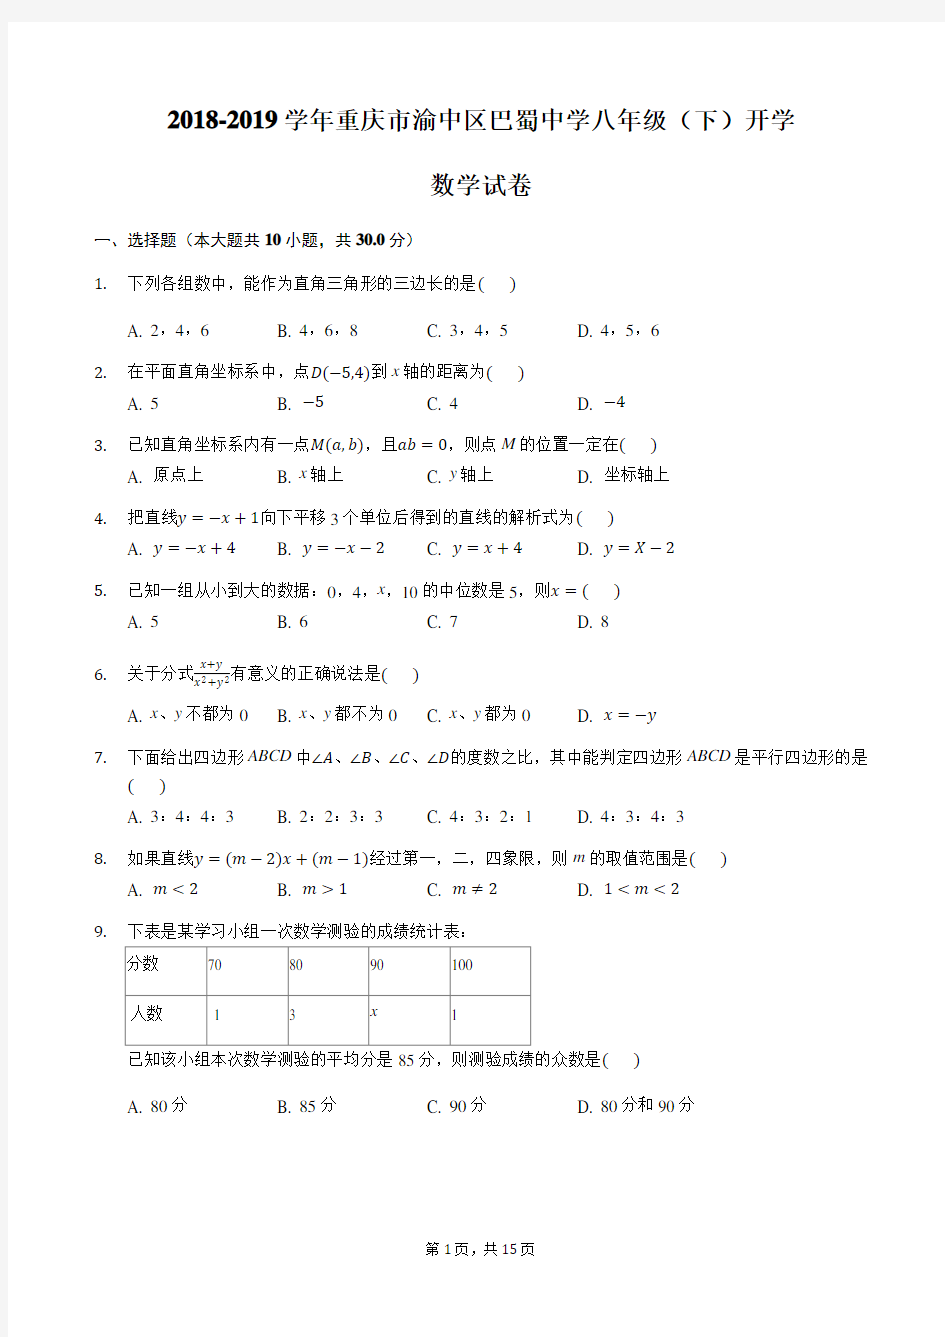 重庆巴蜀中学2018-2019学年初2020级八年级下期入学考试数学试题